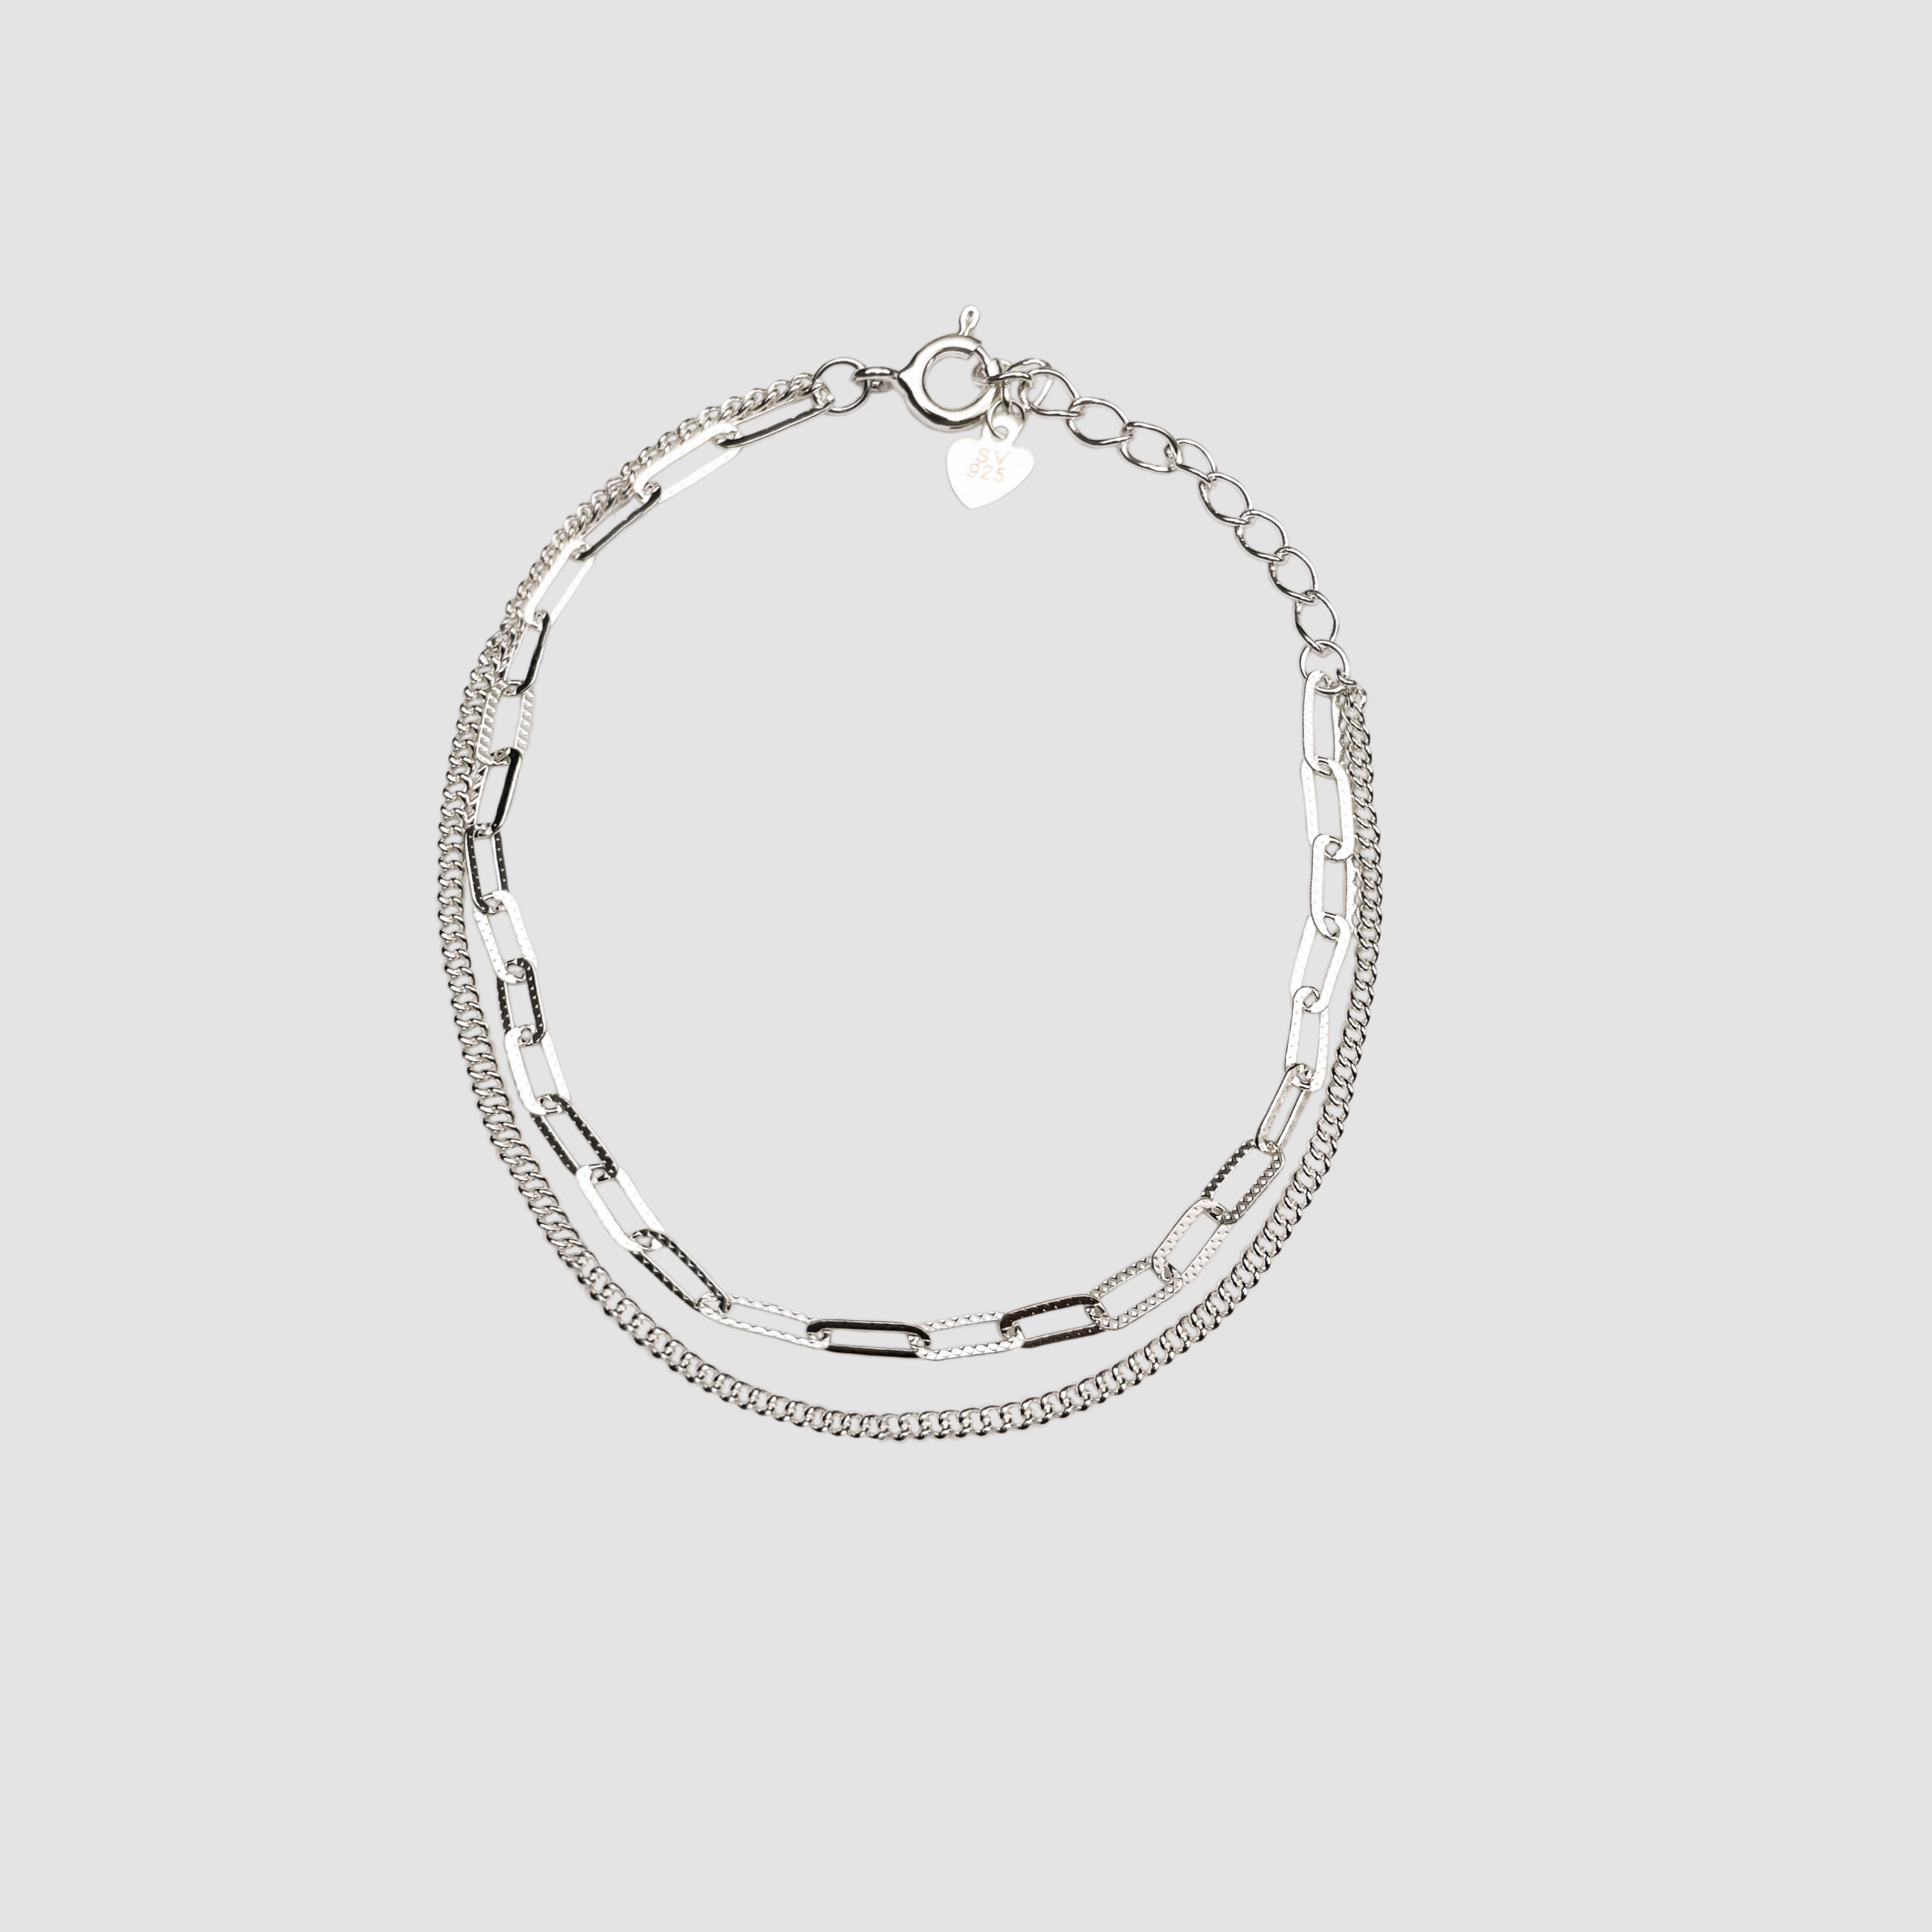 Double chain silver bracelet BlackSugar-Fine Modern Chic Jewelry that Celebrities Wear